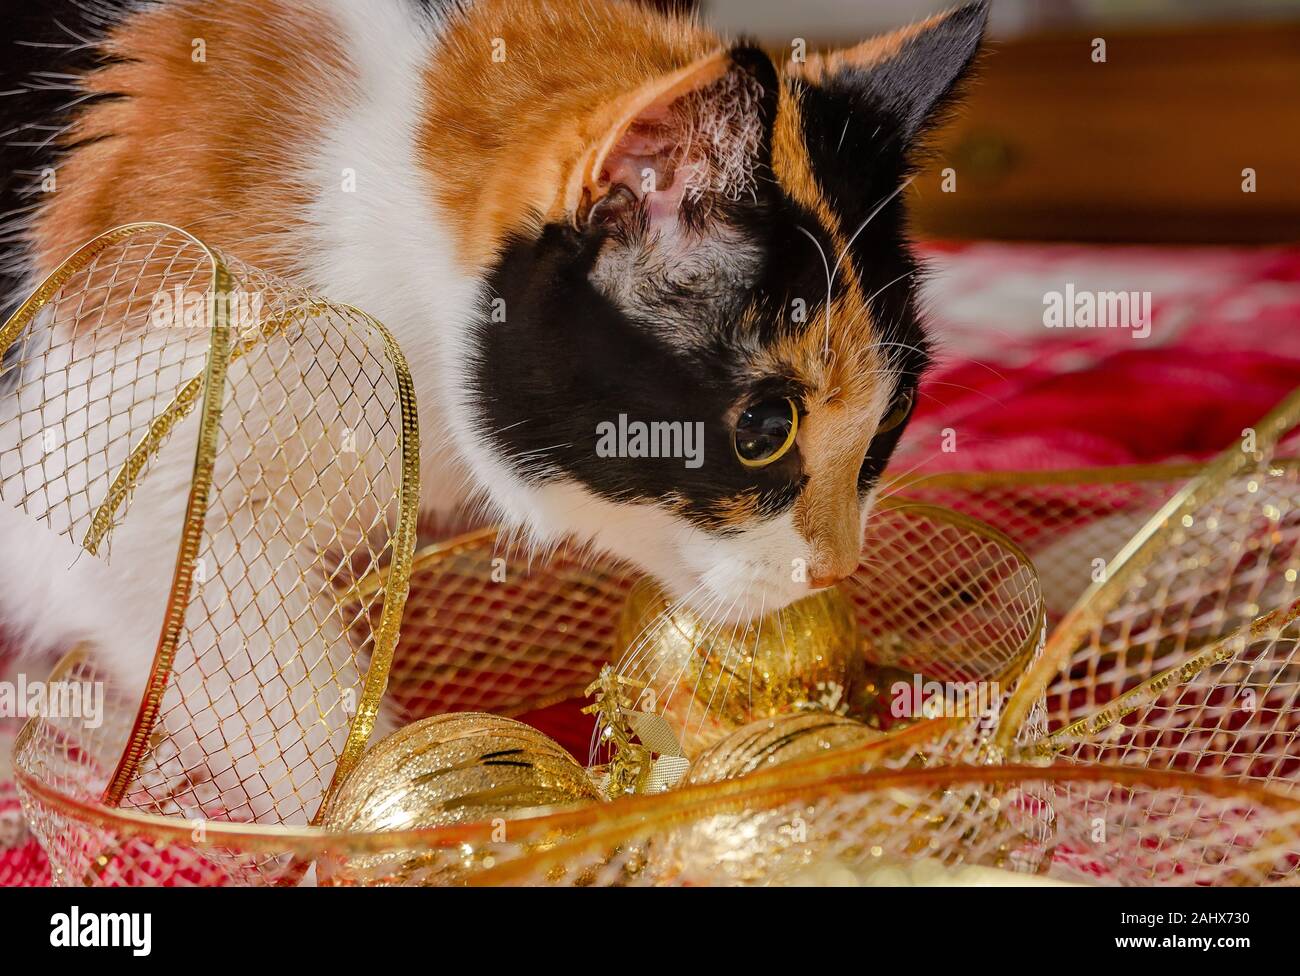 Zucca, un quattro-anno-vecchia gatta calico, ispeziona oro Ornamenti natale e nastro, Dic 29, 2019, in Coden, Alabama. Foto Stock